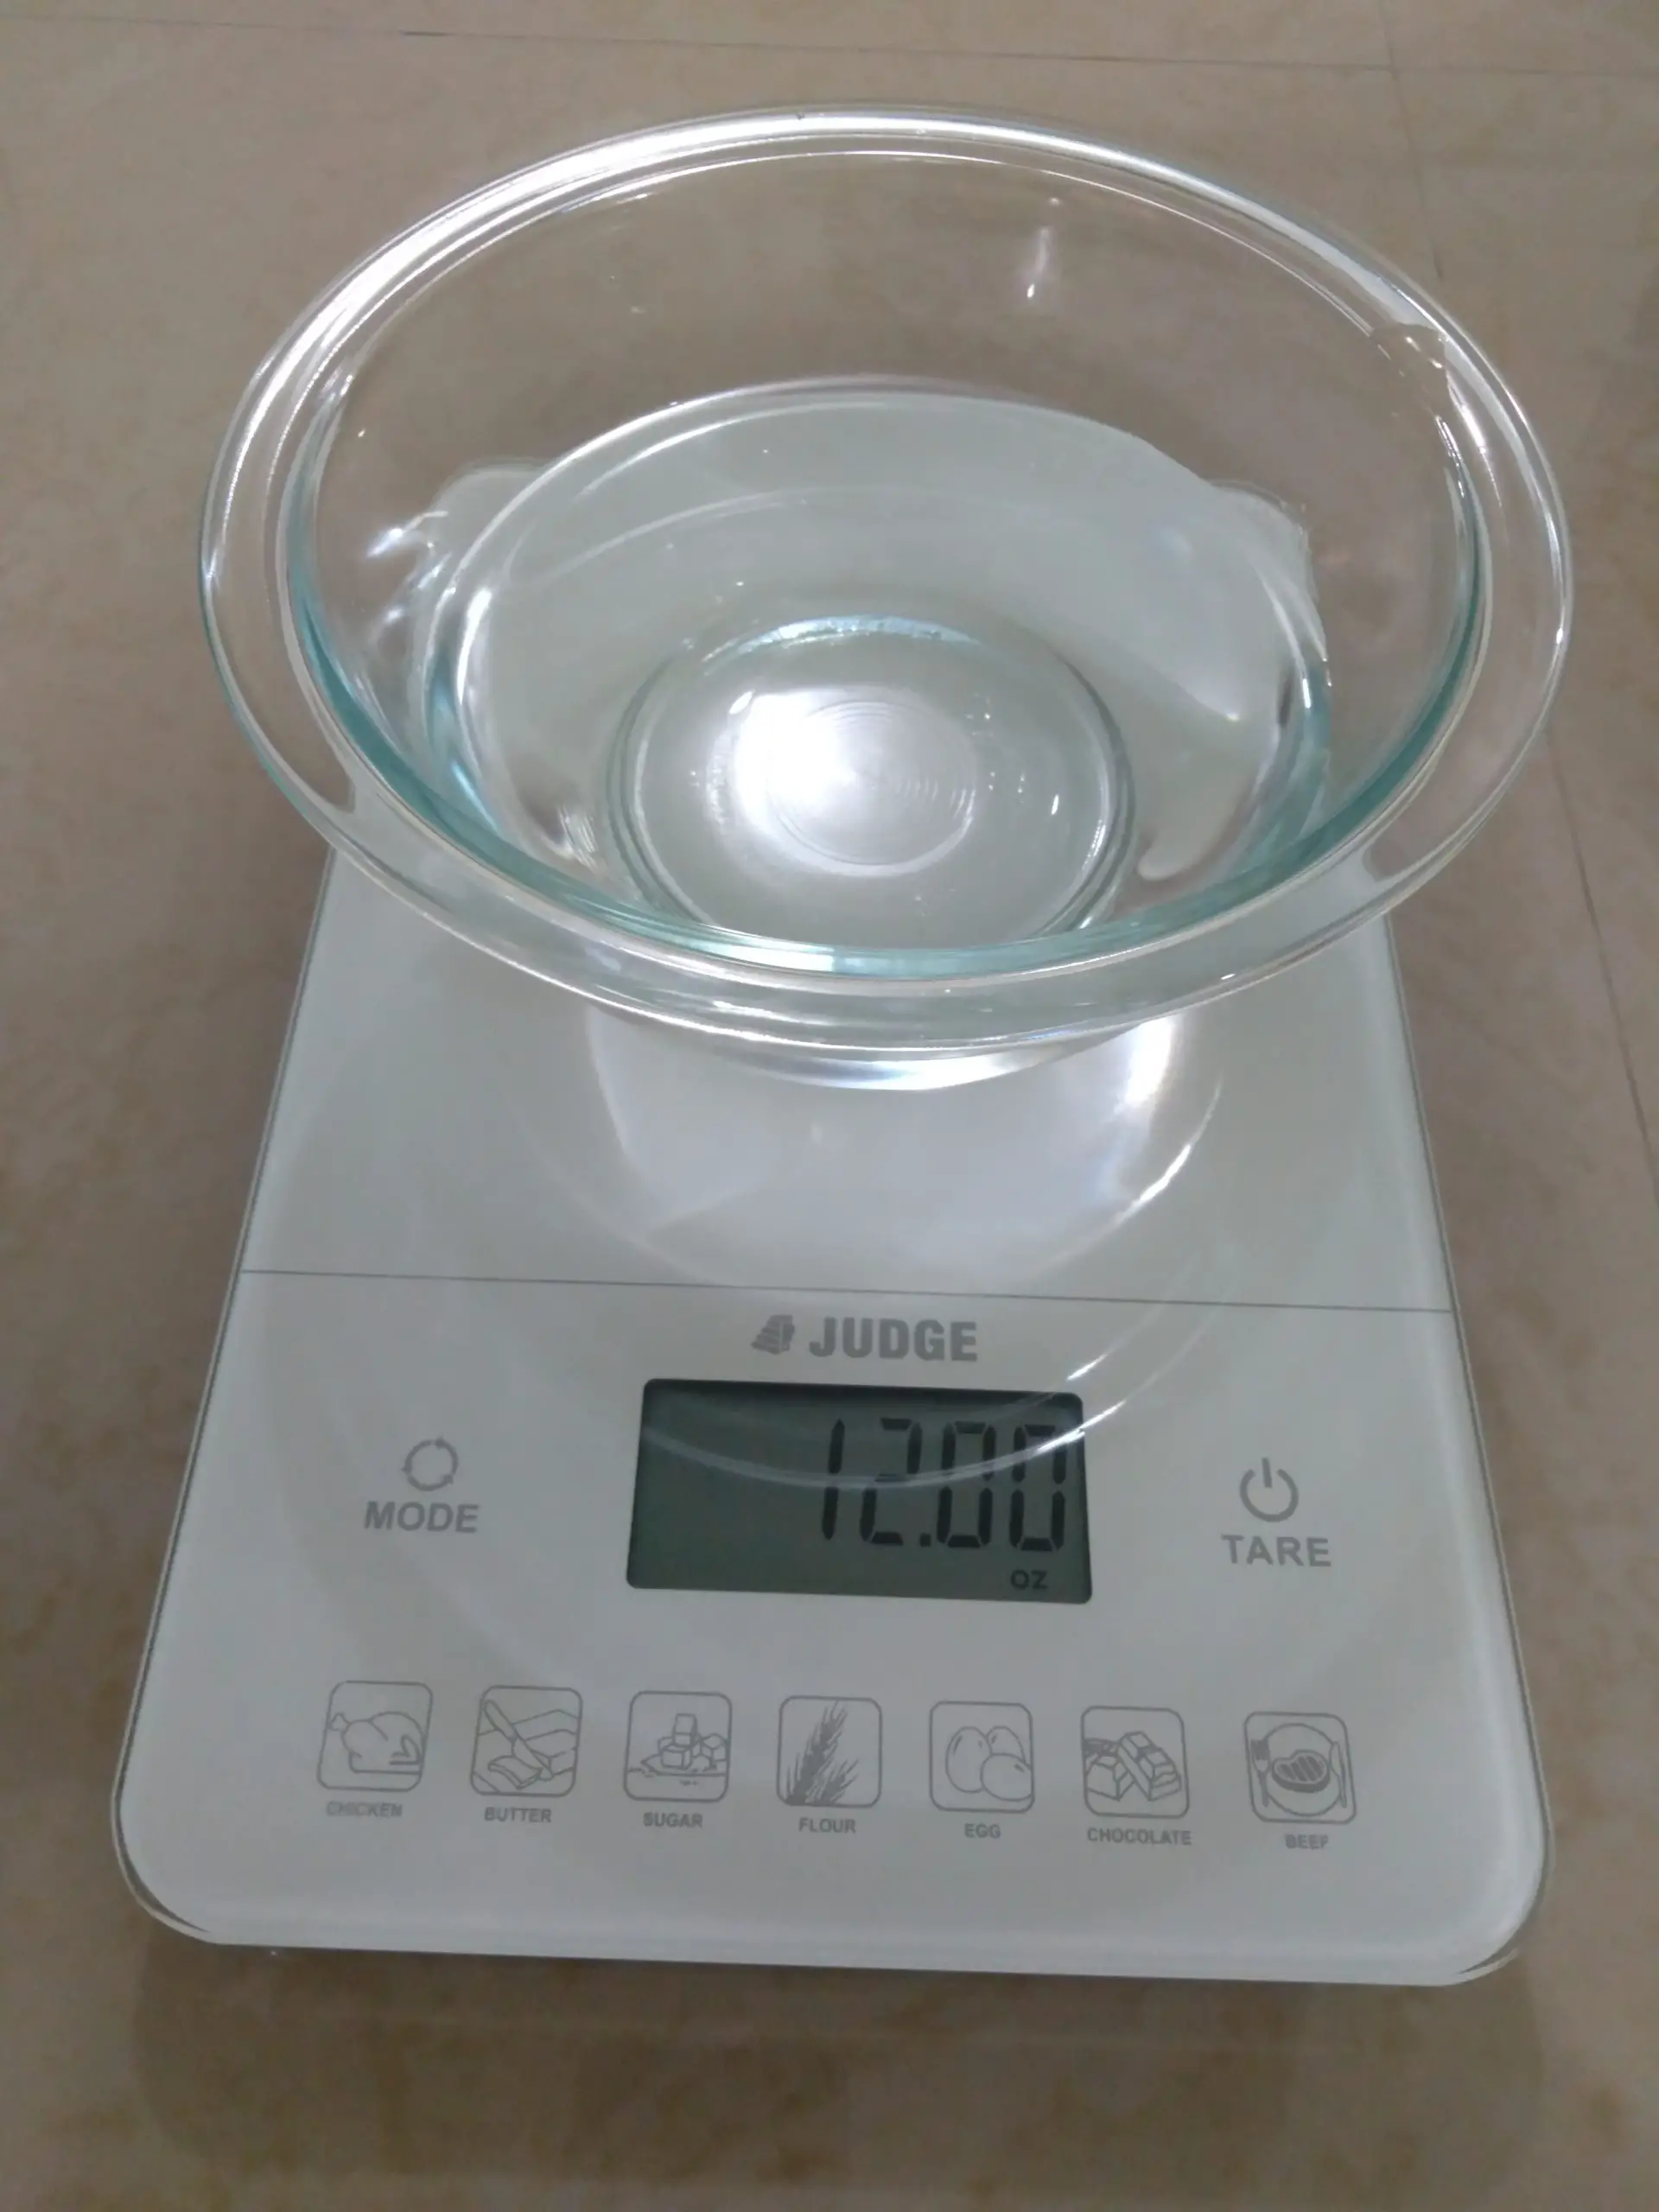 Weighing water